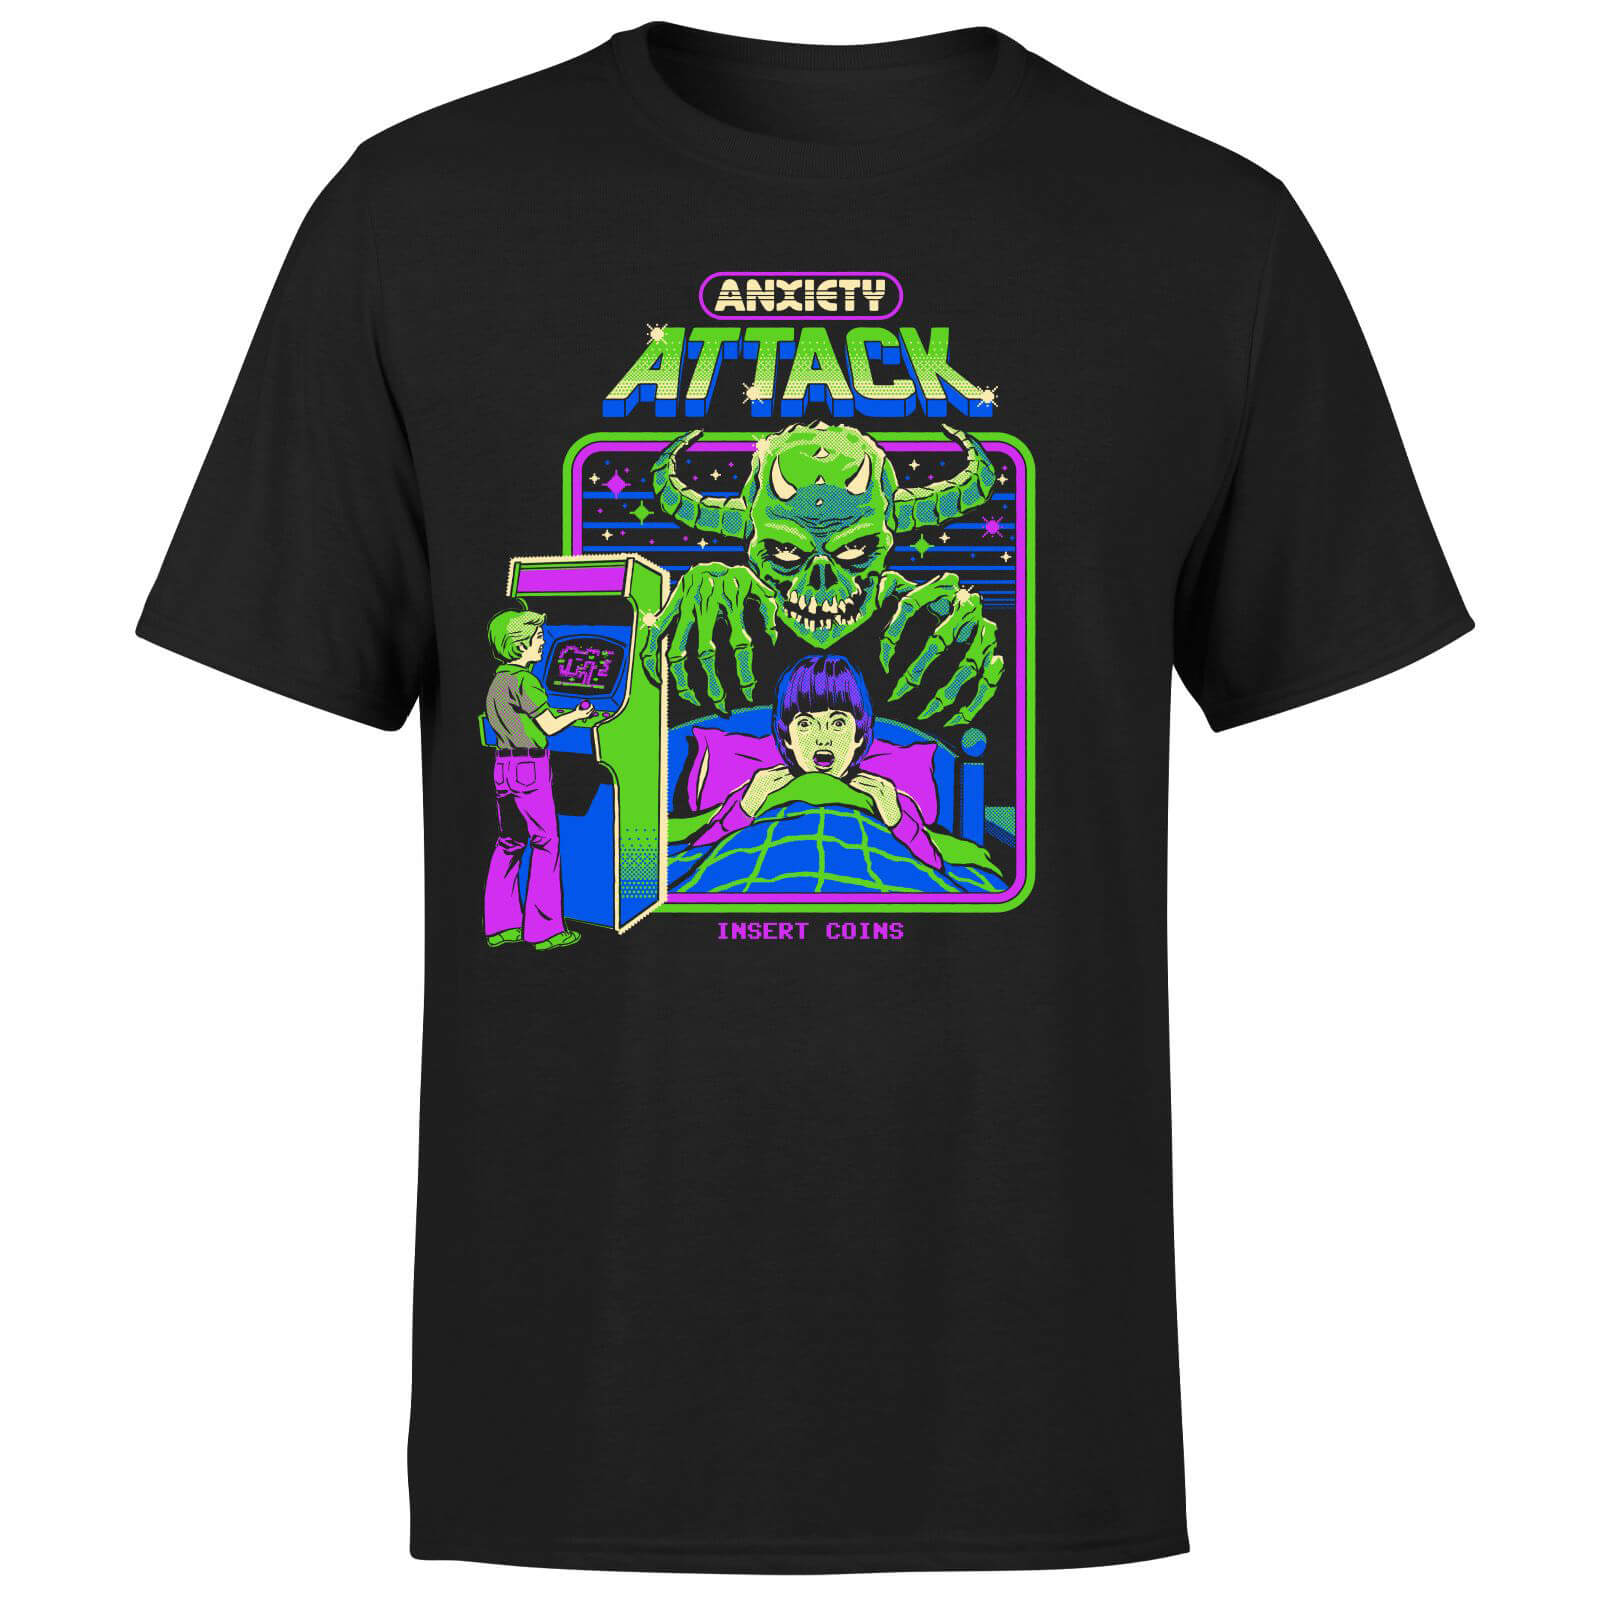 Anxiety Attack Men's T-Shirt - Black - 3XL - Black